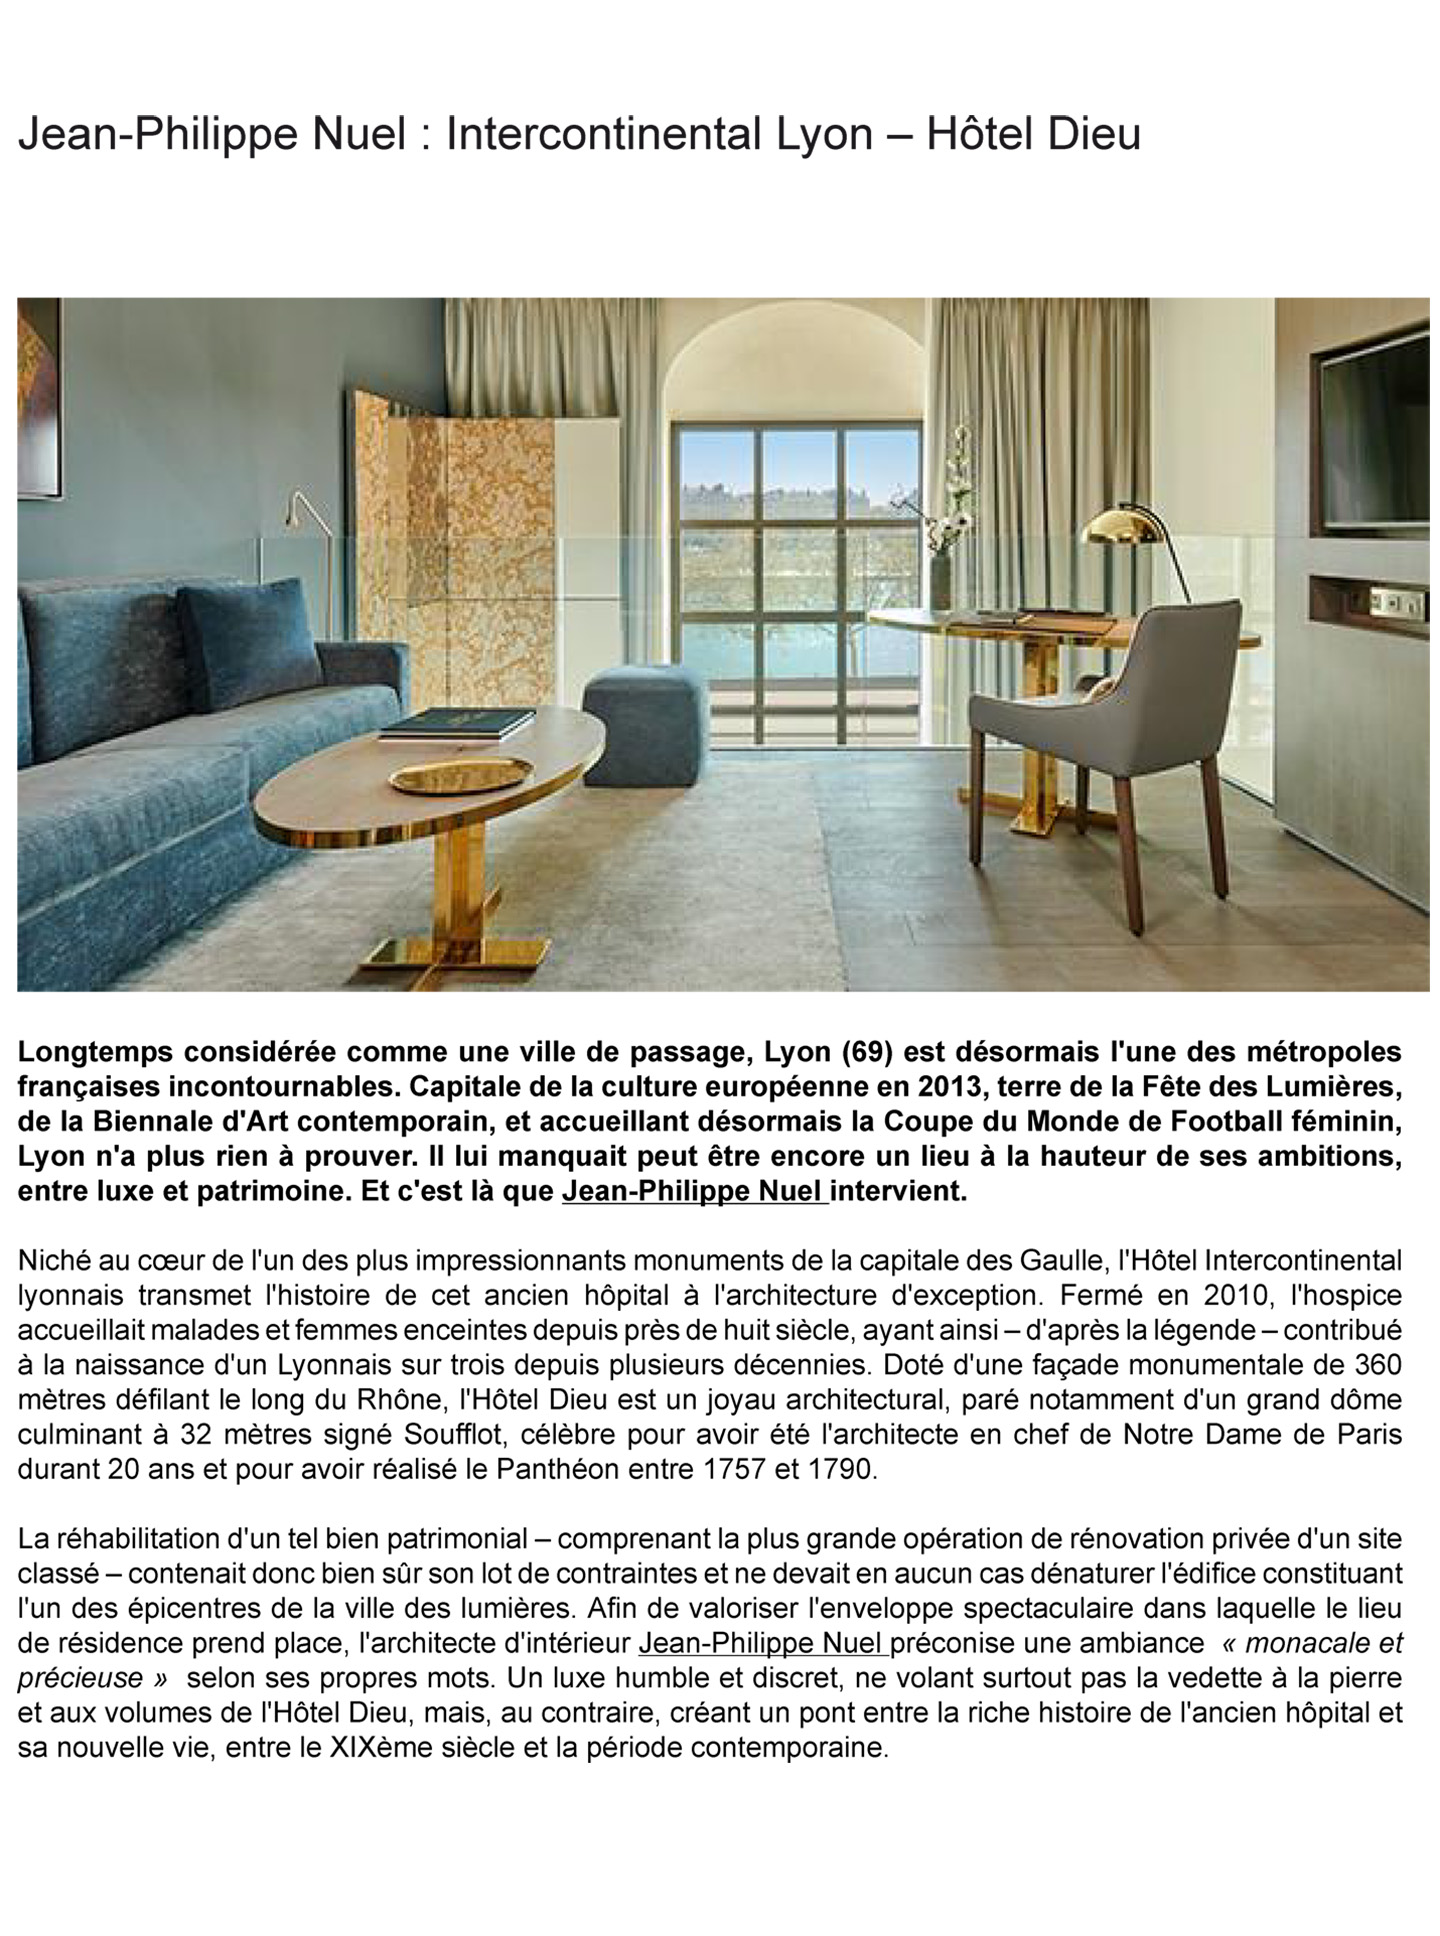 Article sur l'intercontinental lyon hotel dieu réalisé par le studio jean-Philippe Nuel dans le magazine muuuz, nouvel hotel de luxe, architecture d'intérieur de luxe